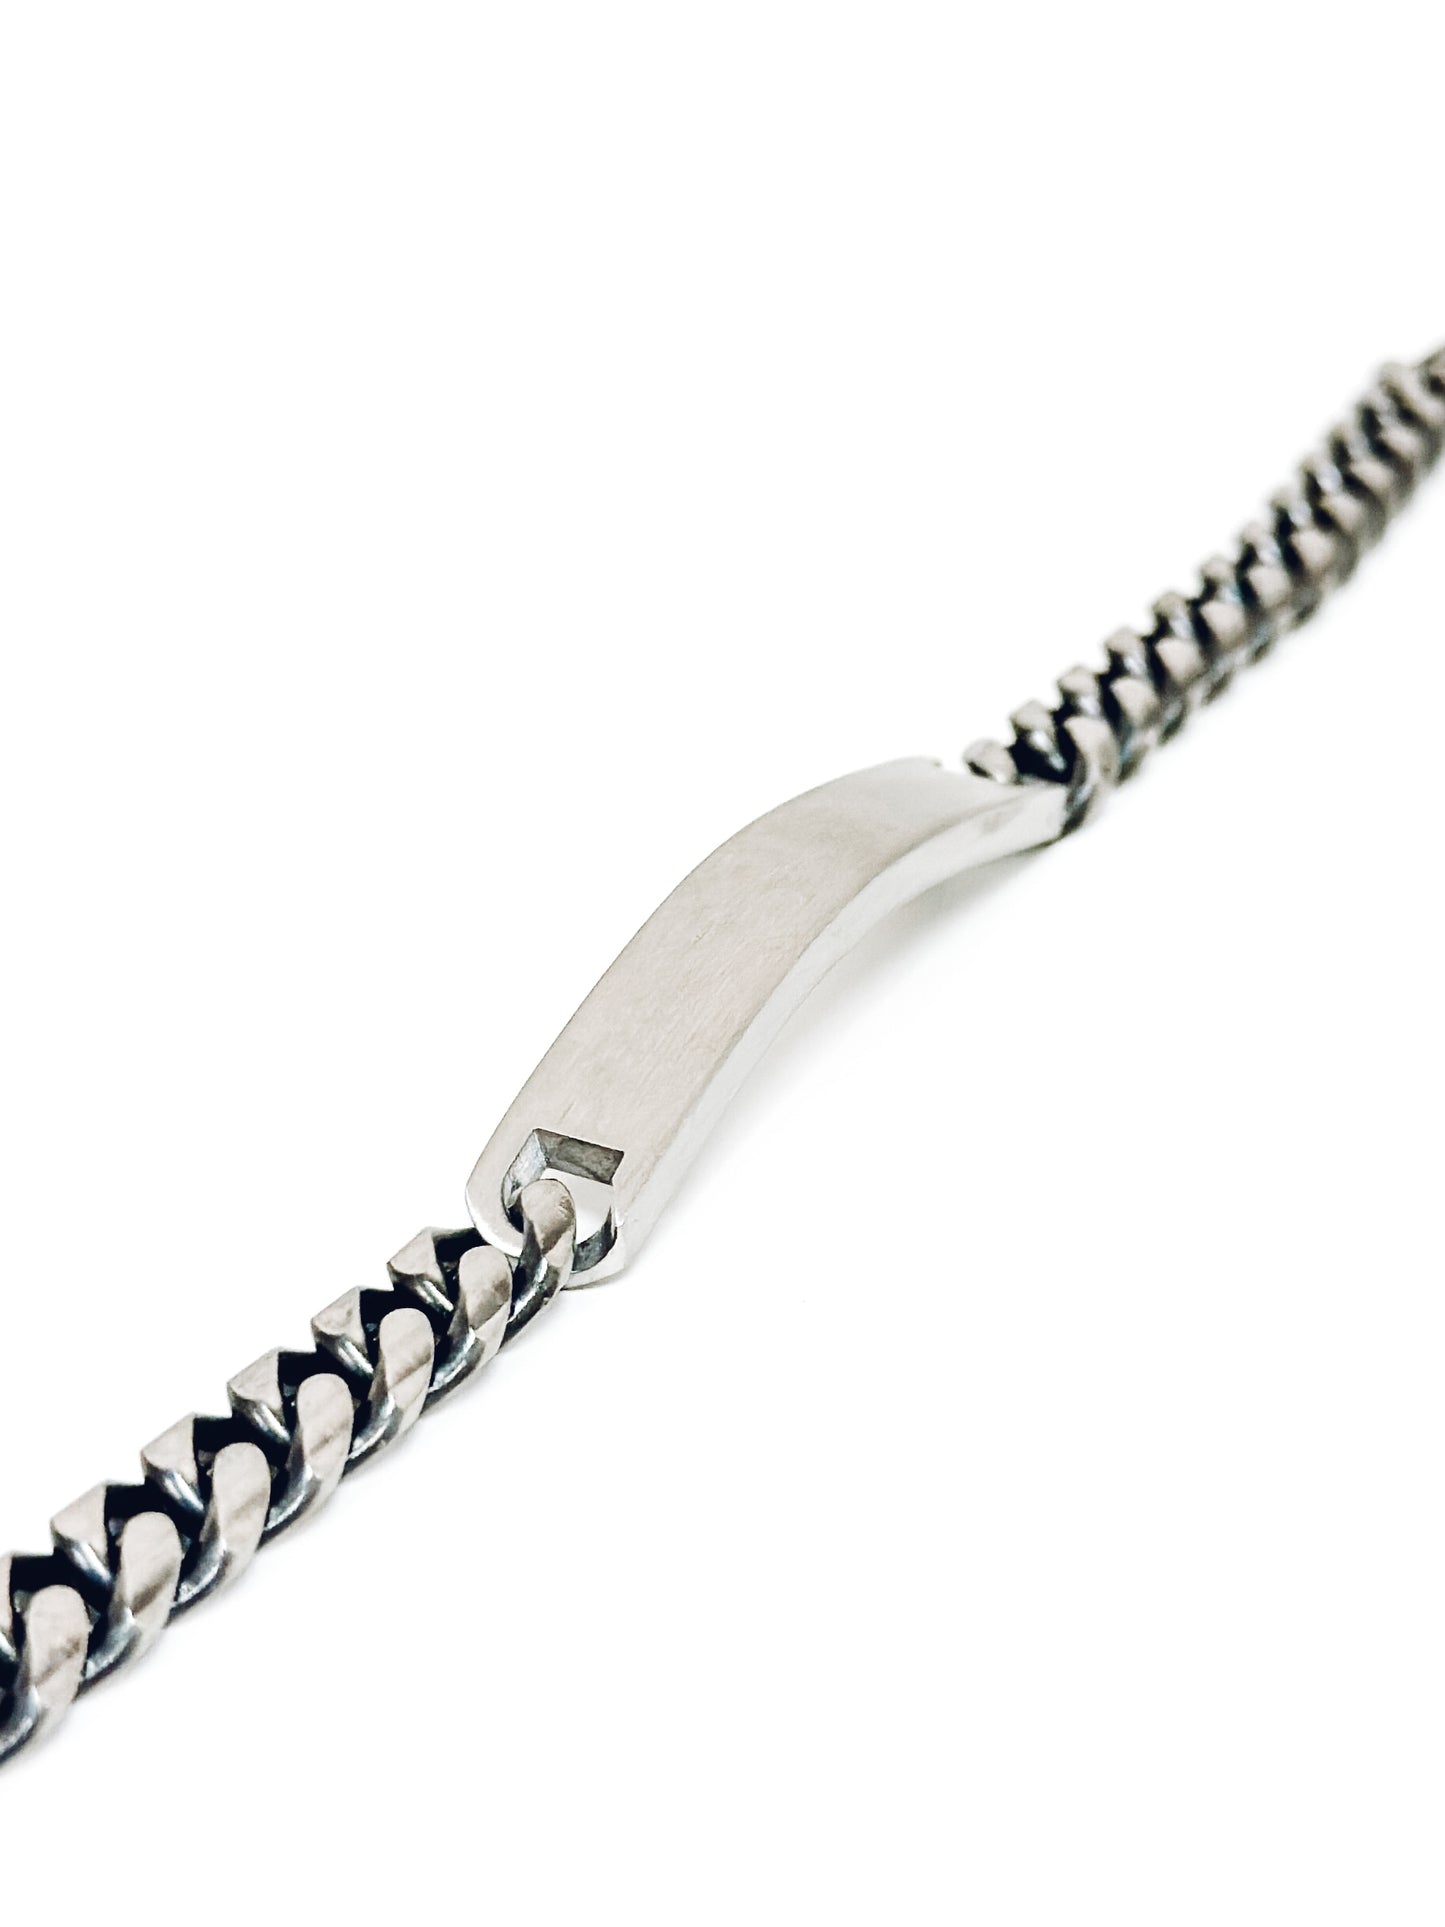 Board Men's Bracelet | Stainless Steel 316L